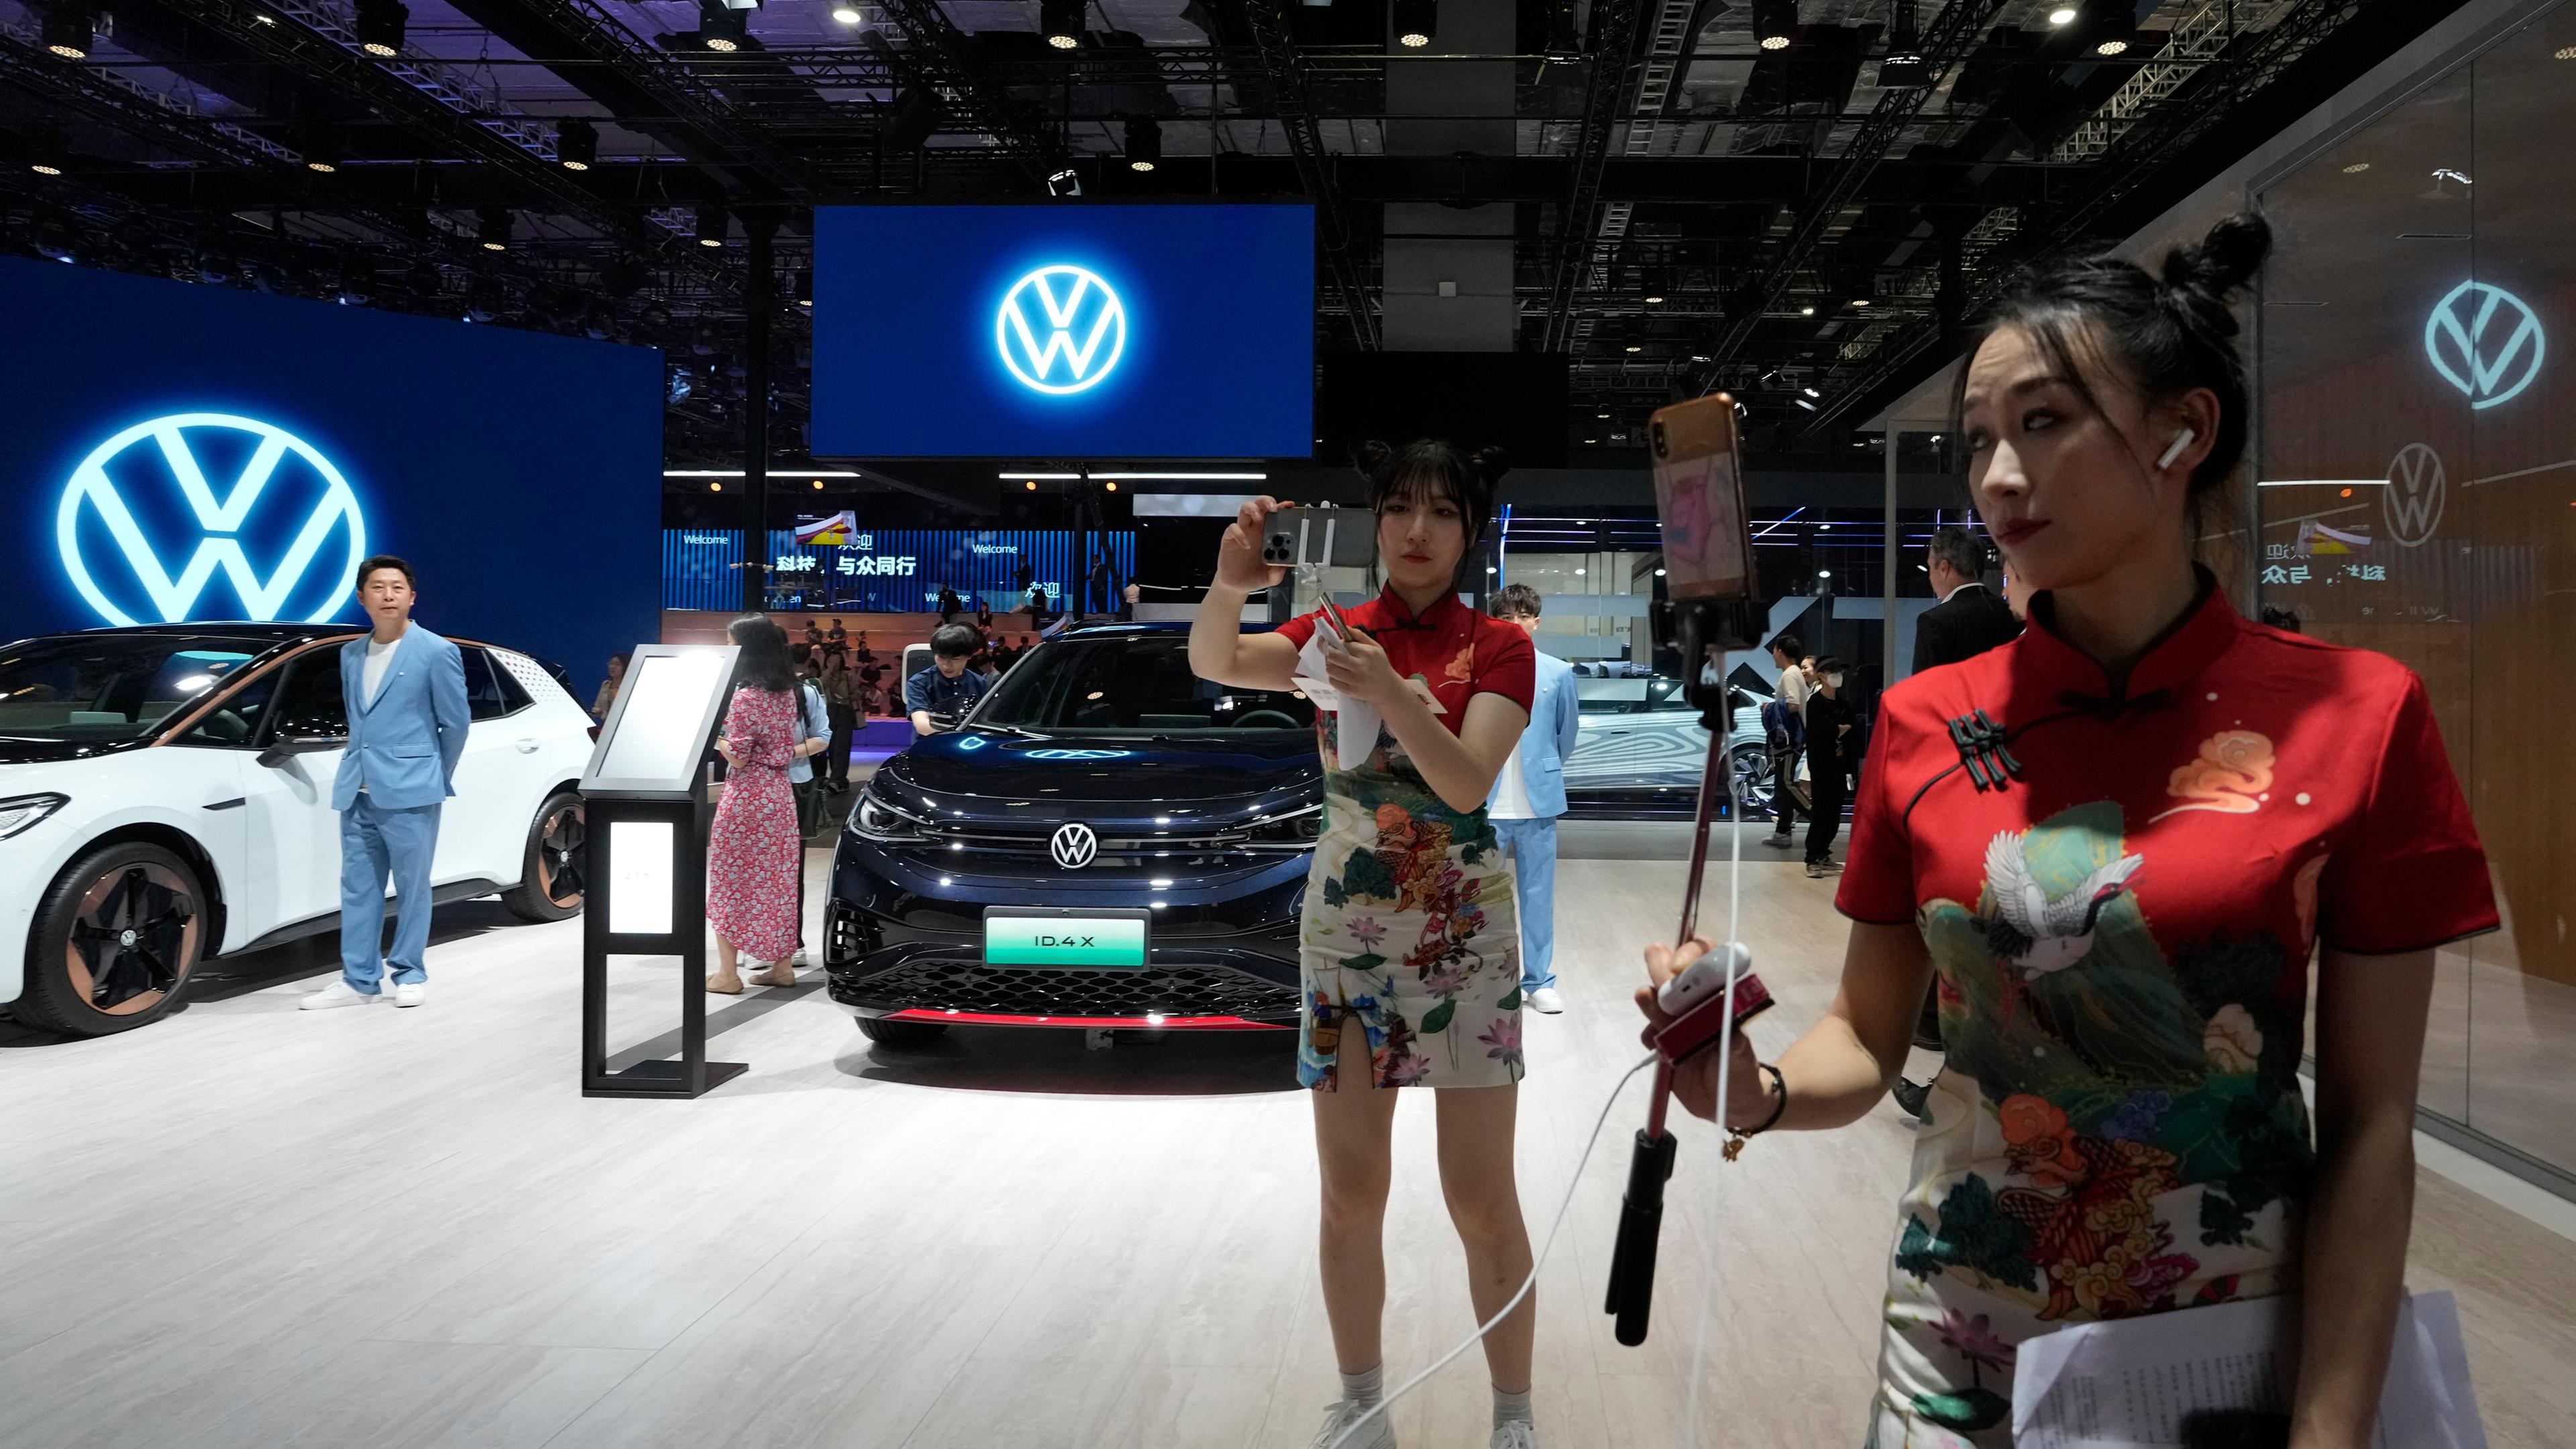 China, Shanghai: Chinesische Vlogger (Video Blogger) versammeln sich am Stand des Autoherstellers Volkswagen während der Automesse Auto Shanghai 2023.